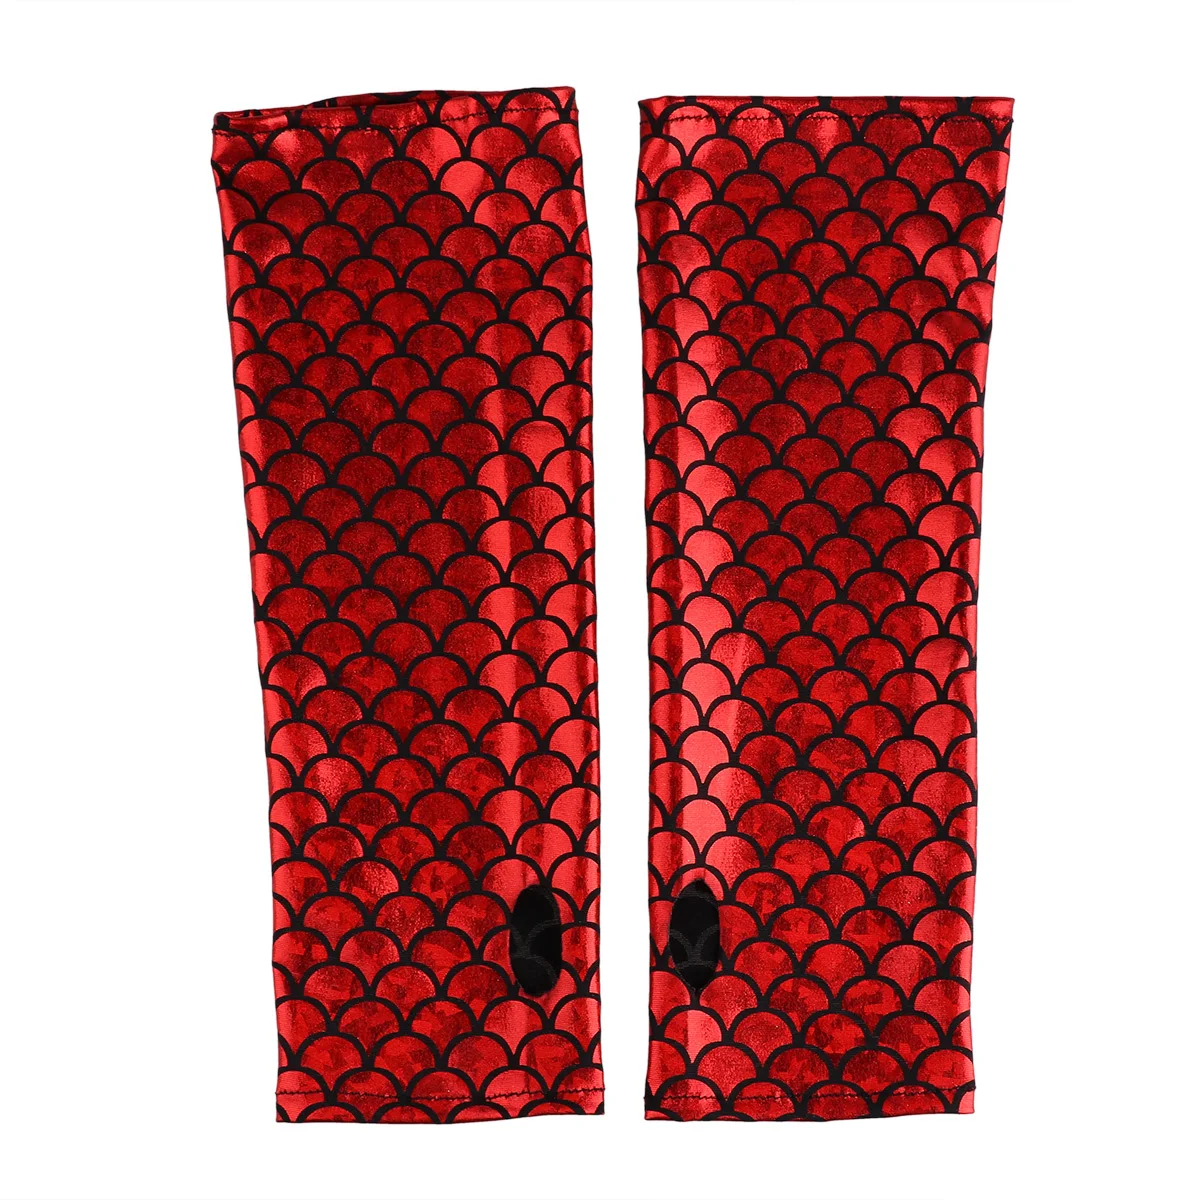 Длинные перчатки с принтом рыбьей чешуи, длинные перчатки без пальцев, рукава для рук, аксессуары для костюма на Хэллоуин для взрослых - Цвет: Red